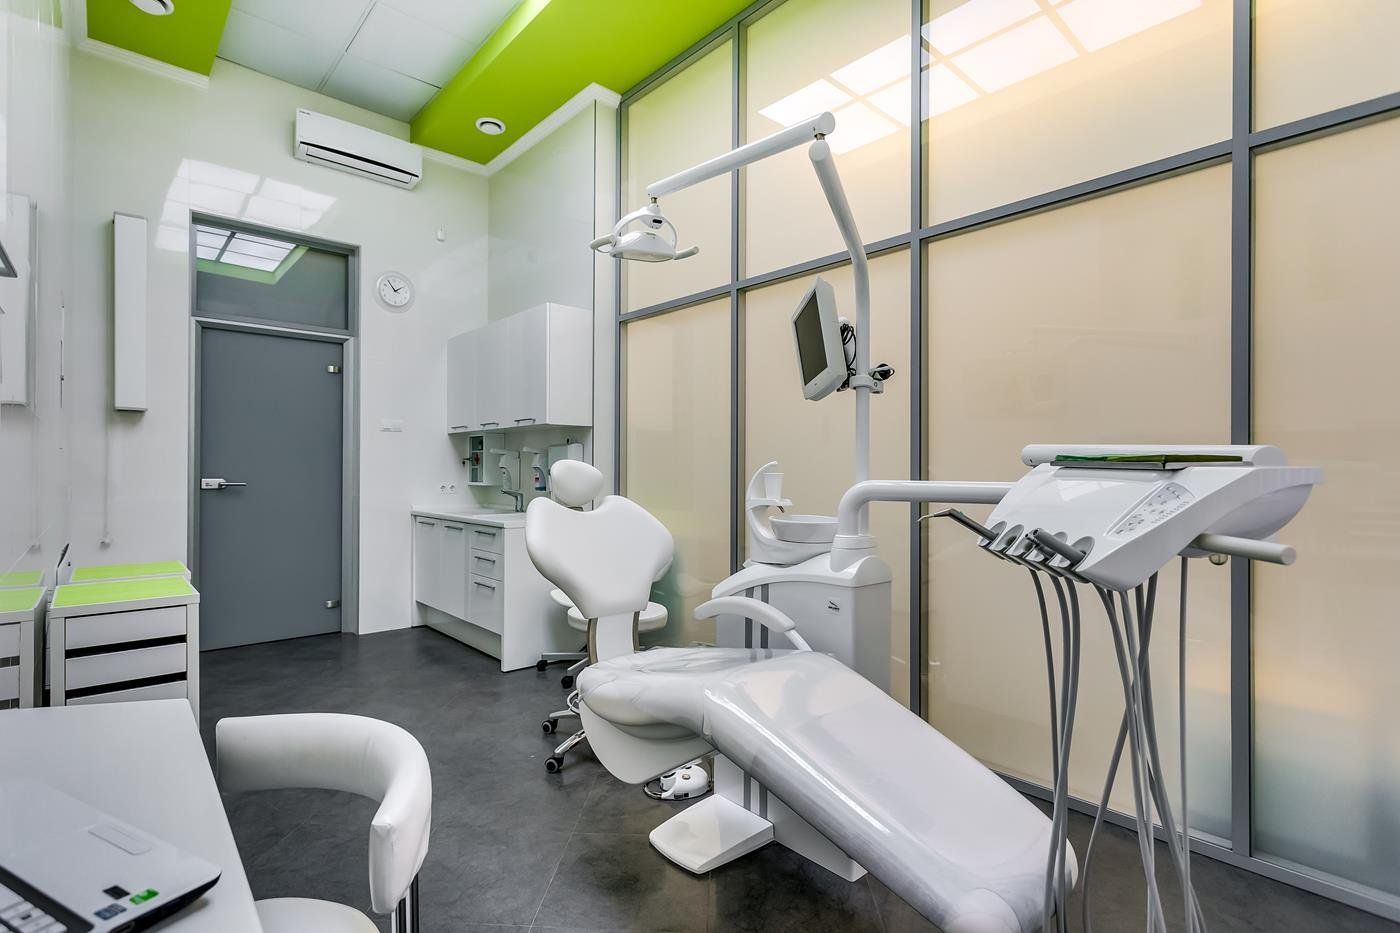 Vislabāk apmaksātās zobārstniecības klīnikas bērniem Ņižņijnovgorodā 2020. gadā